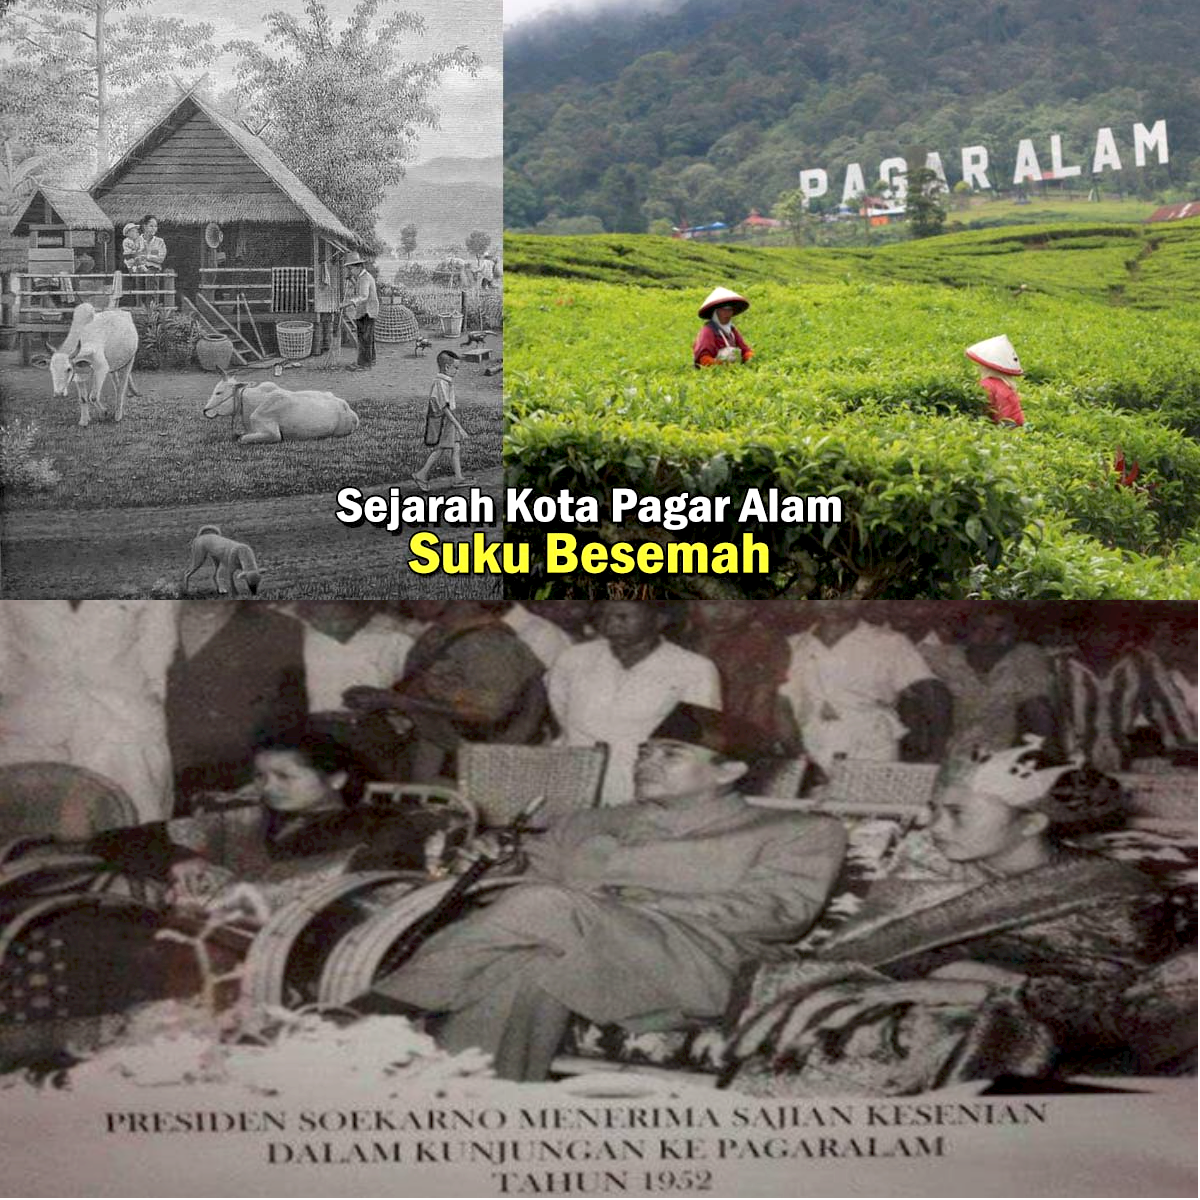 Pernah Dikunjungi Soekarno Dan Jokowi! Inilah 5 Fakta Unik Kota Pagar Alam 